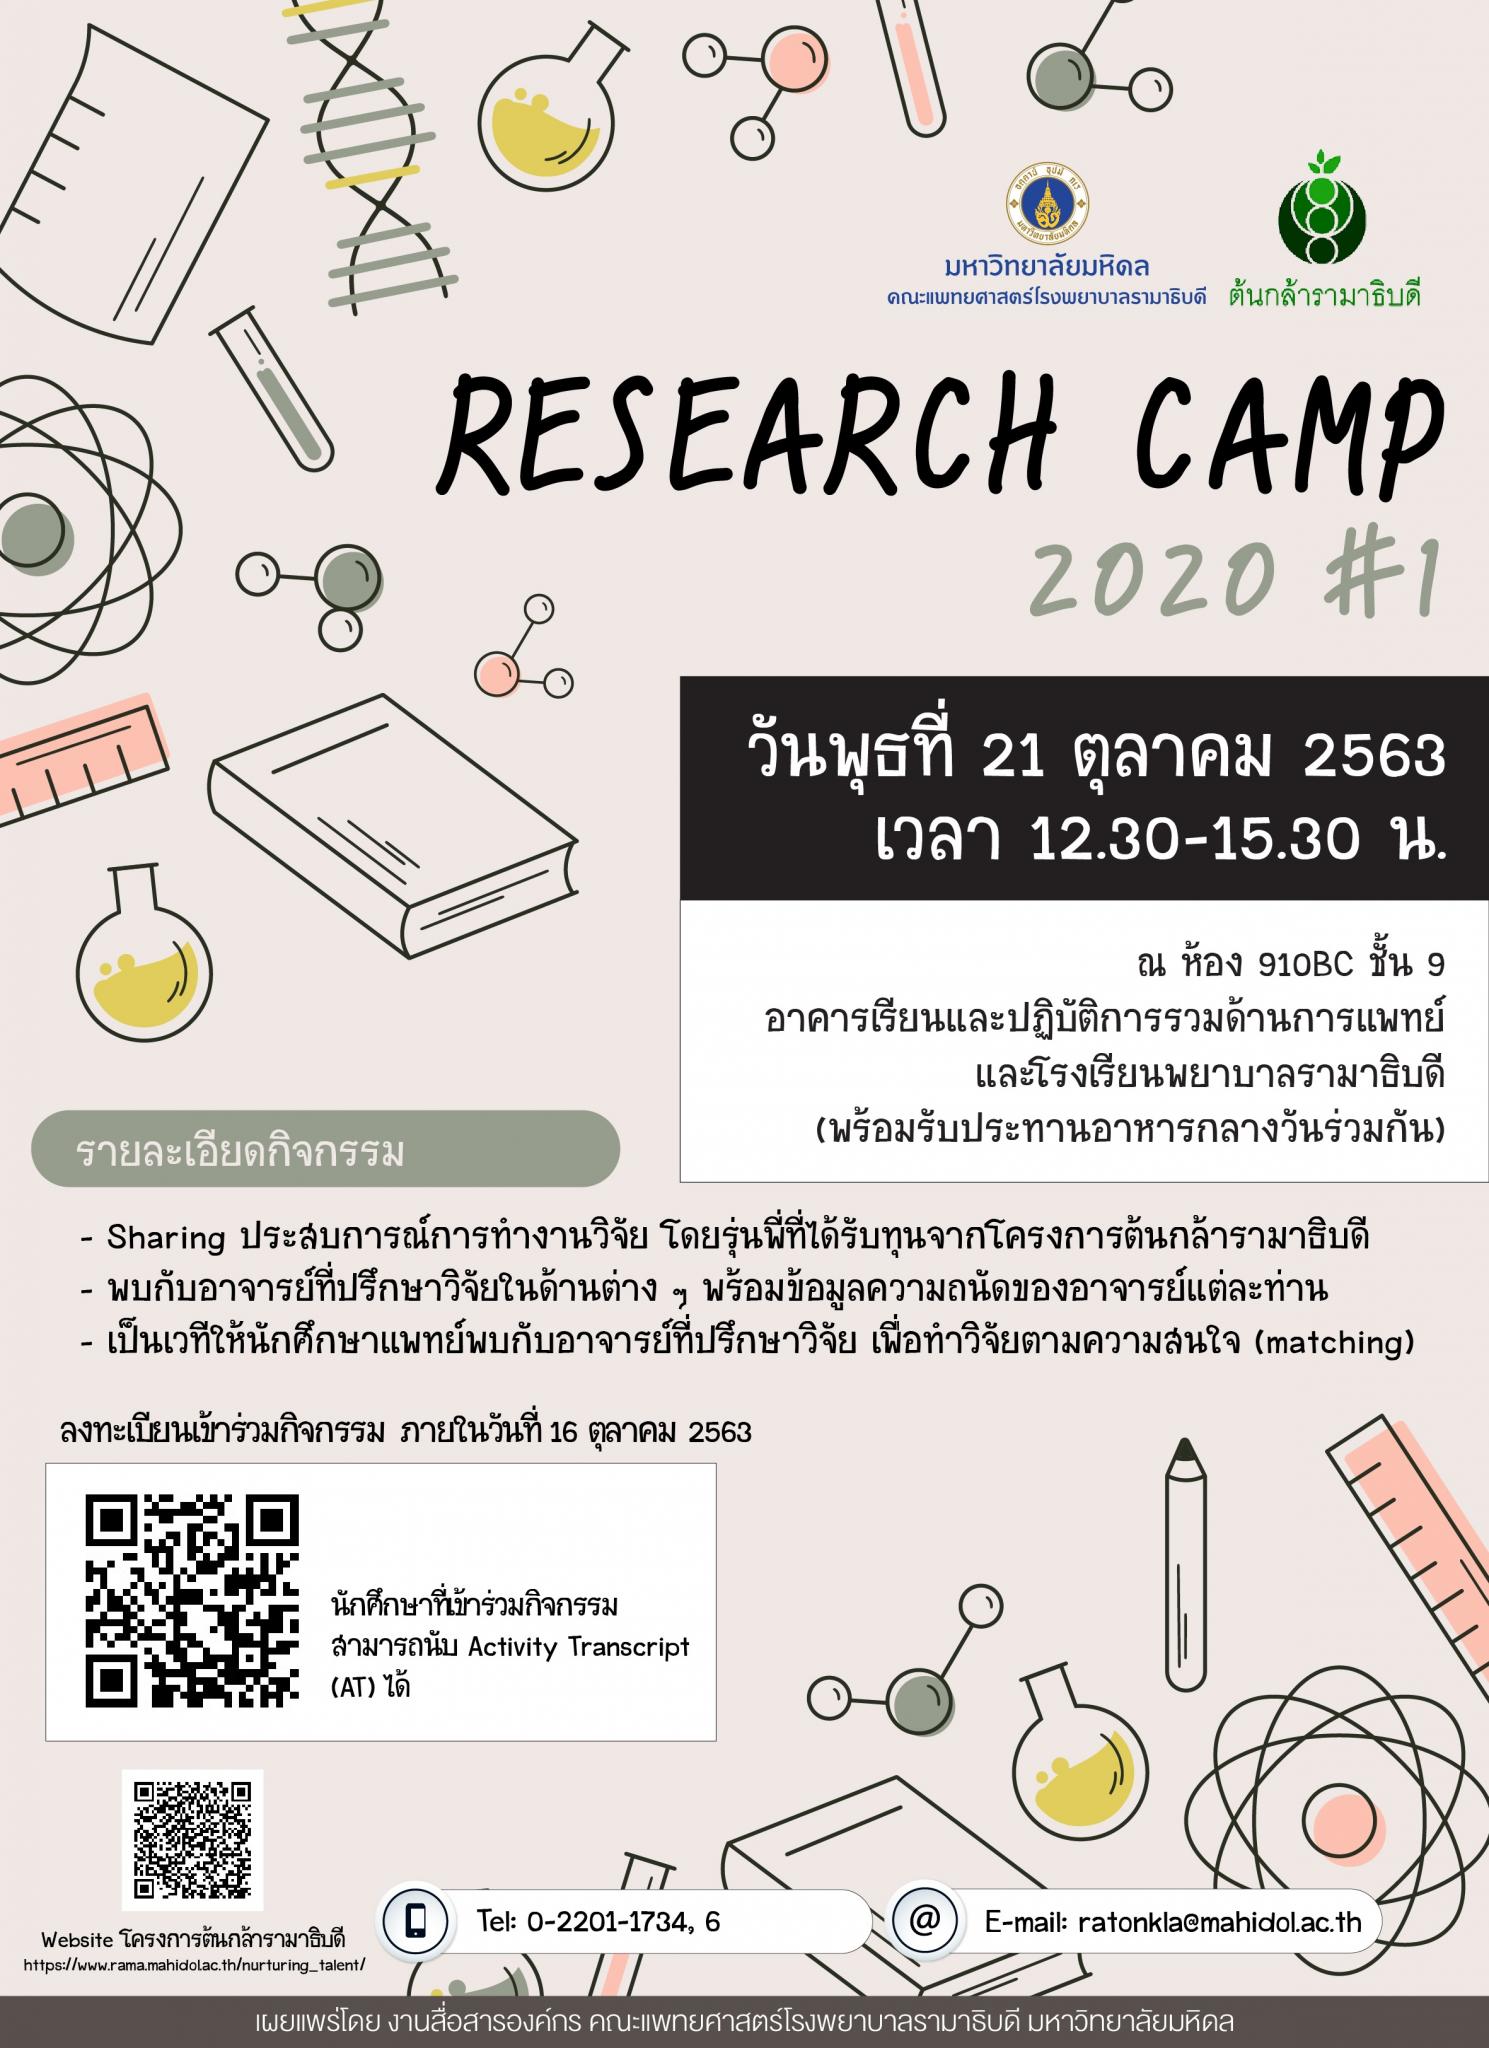 RESEARCH CAMP 2020 #1 